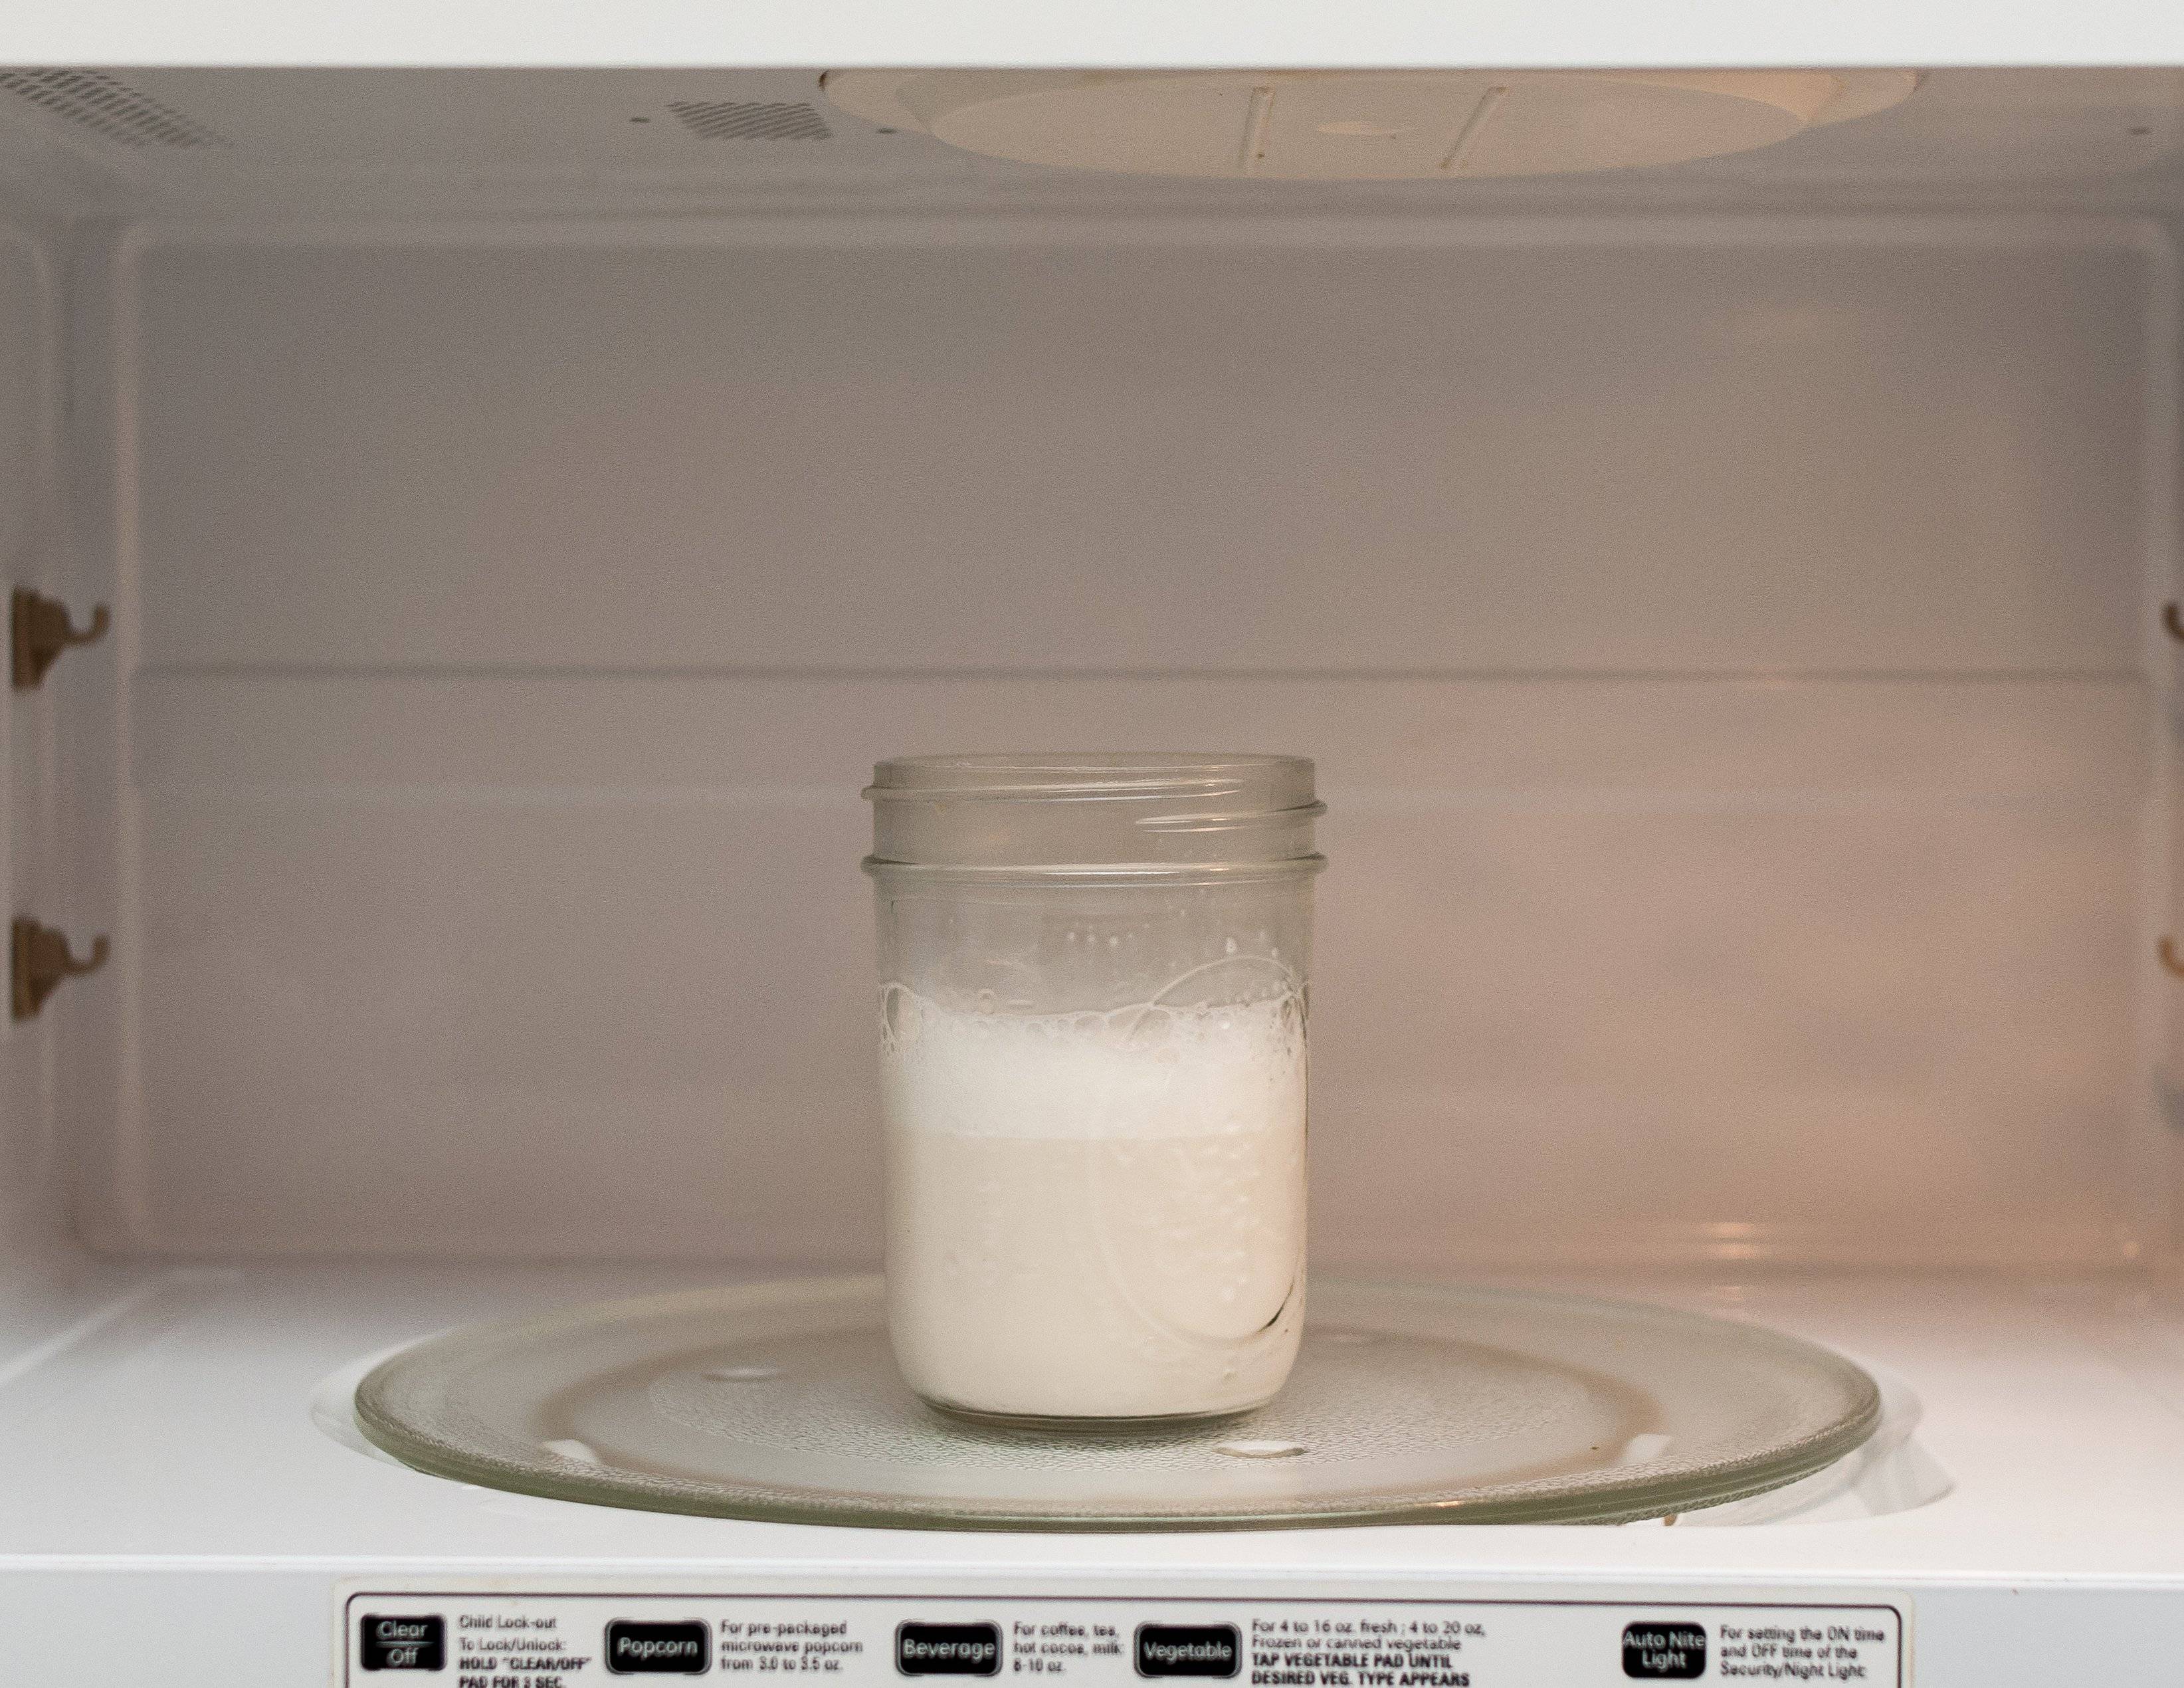 Можно ли греть грудное молоко в микроволновке: опасность или миф? можно ли греть грудное молоко в микроволновке? как разогреть грудное молоко из холодильника, морозилки: методы, советы